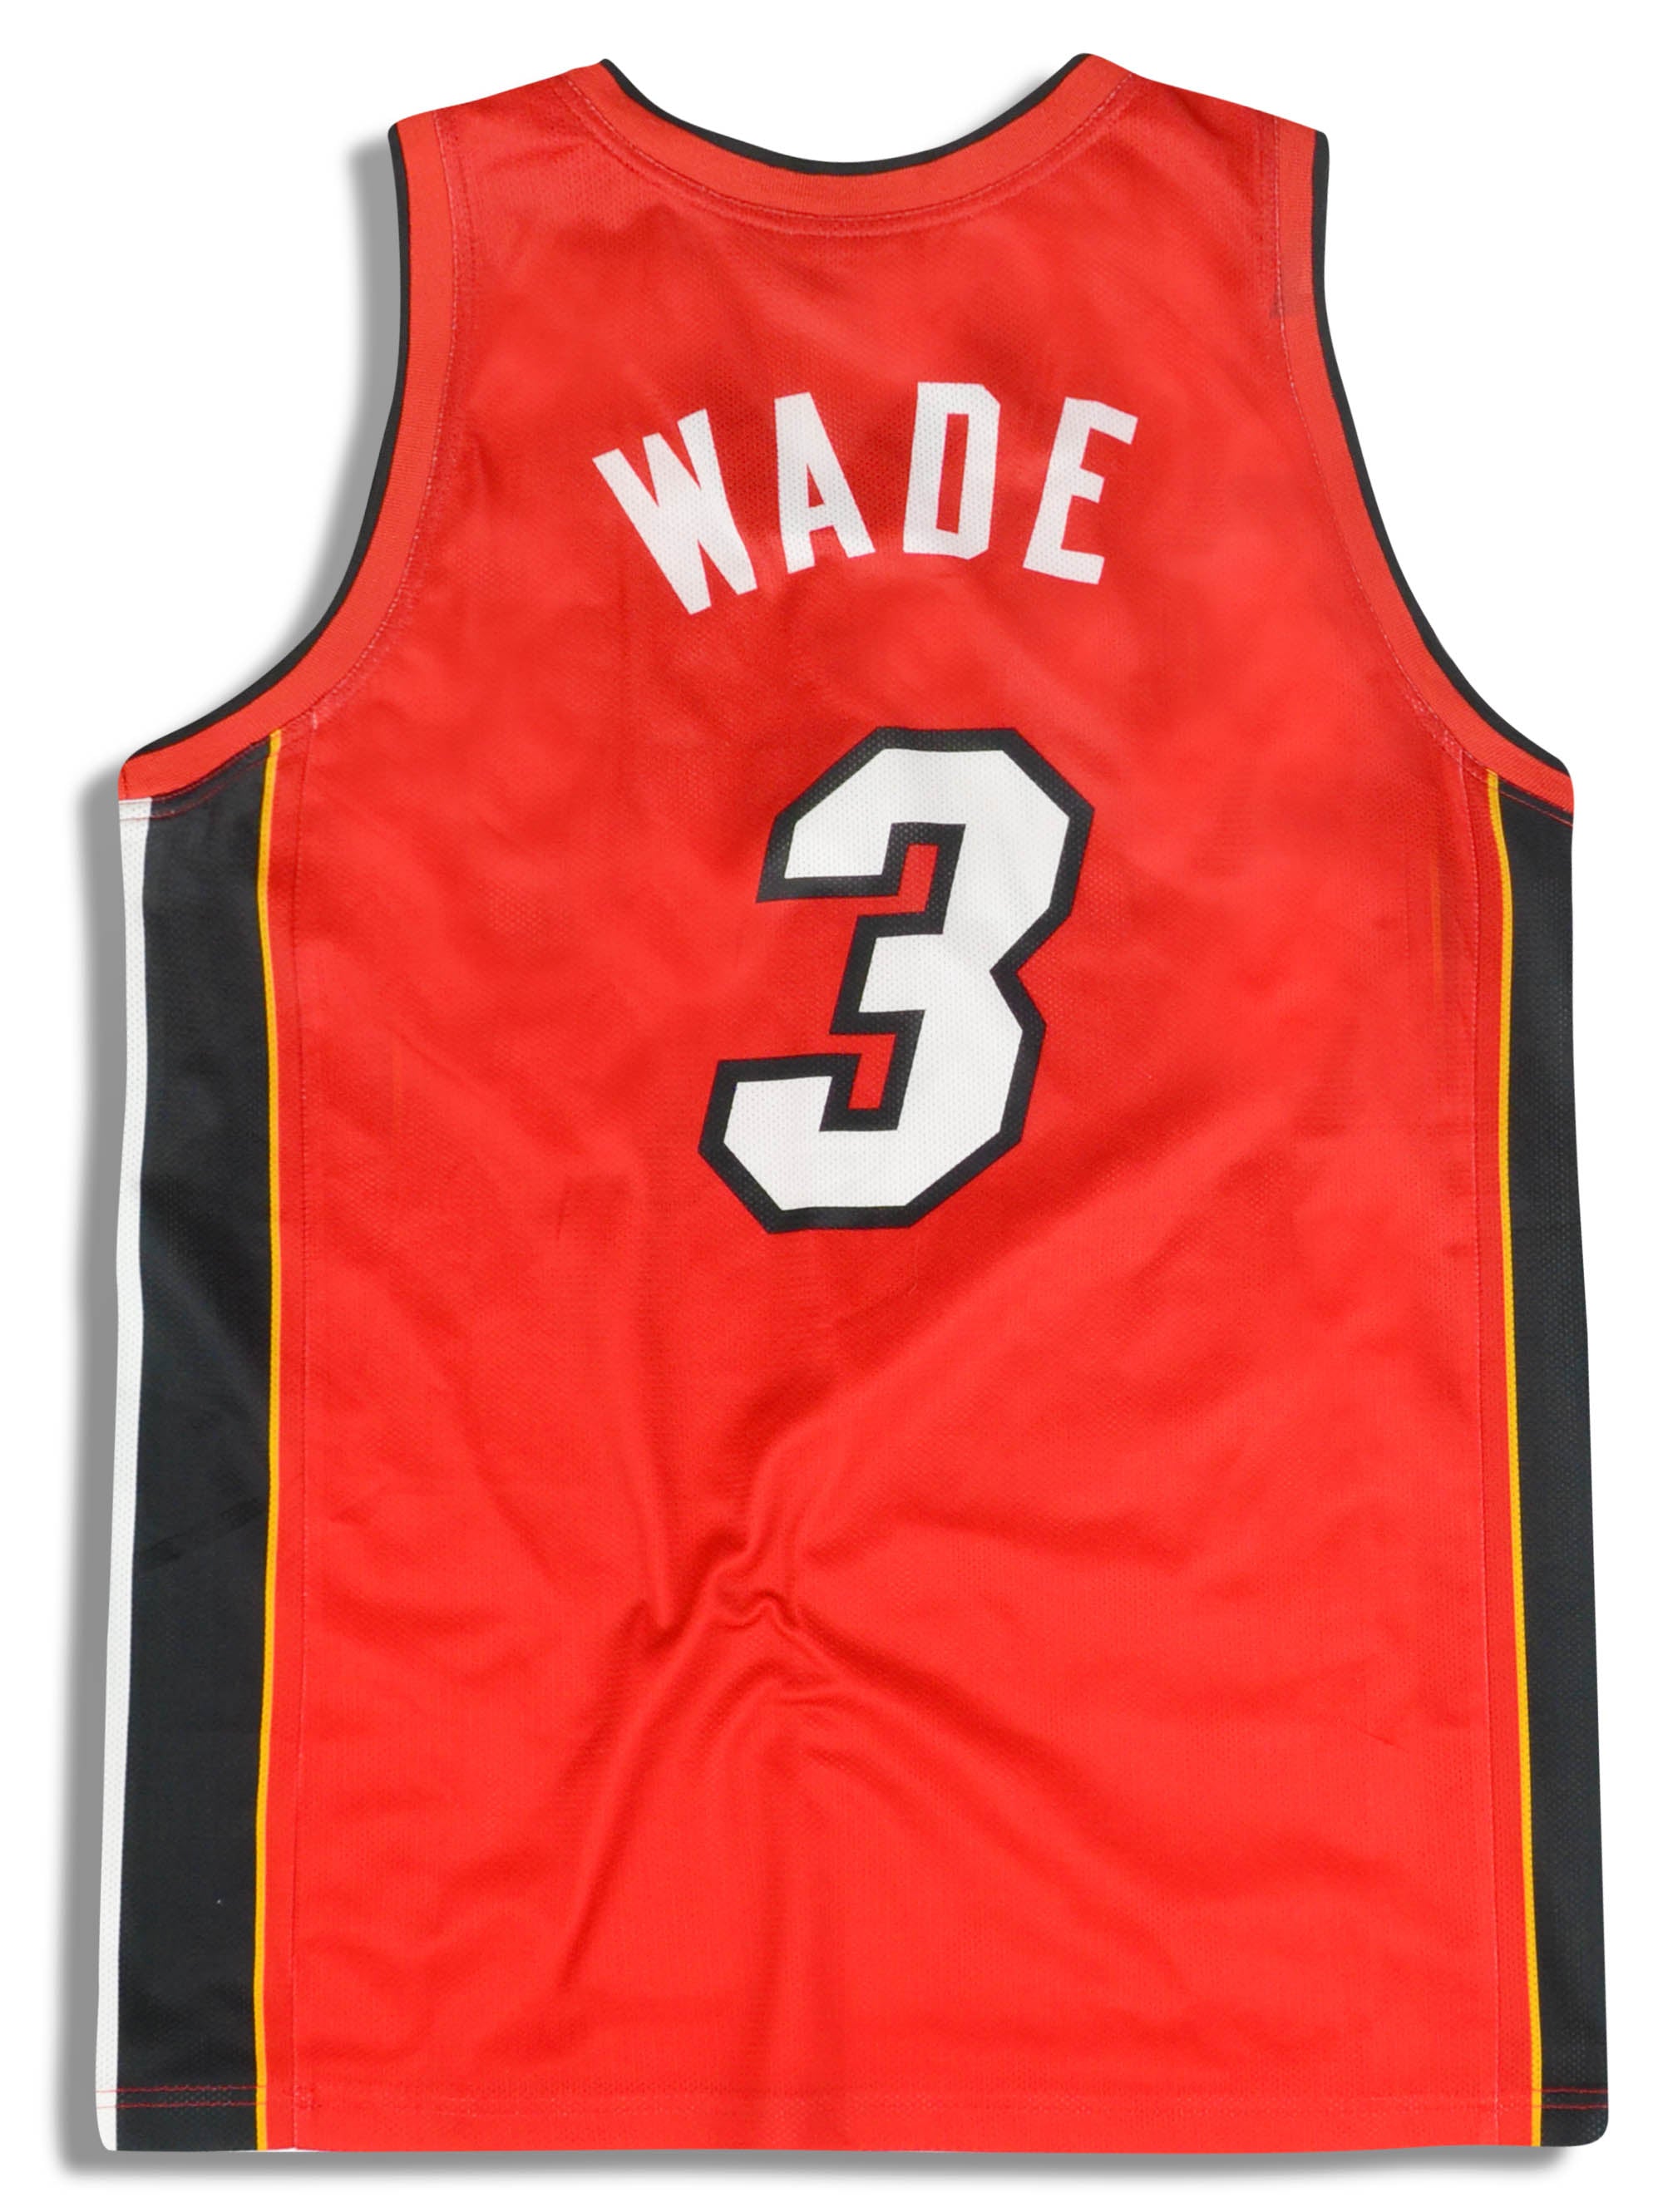 Dwyane Wade Miami Heat Jersey for Sale in Jacksonville, FL